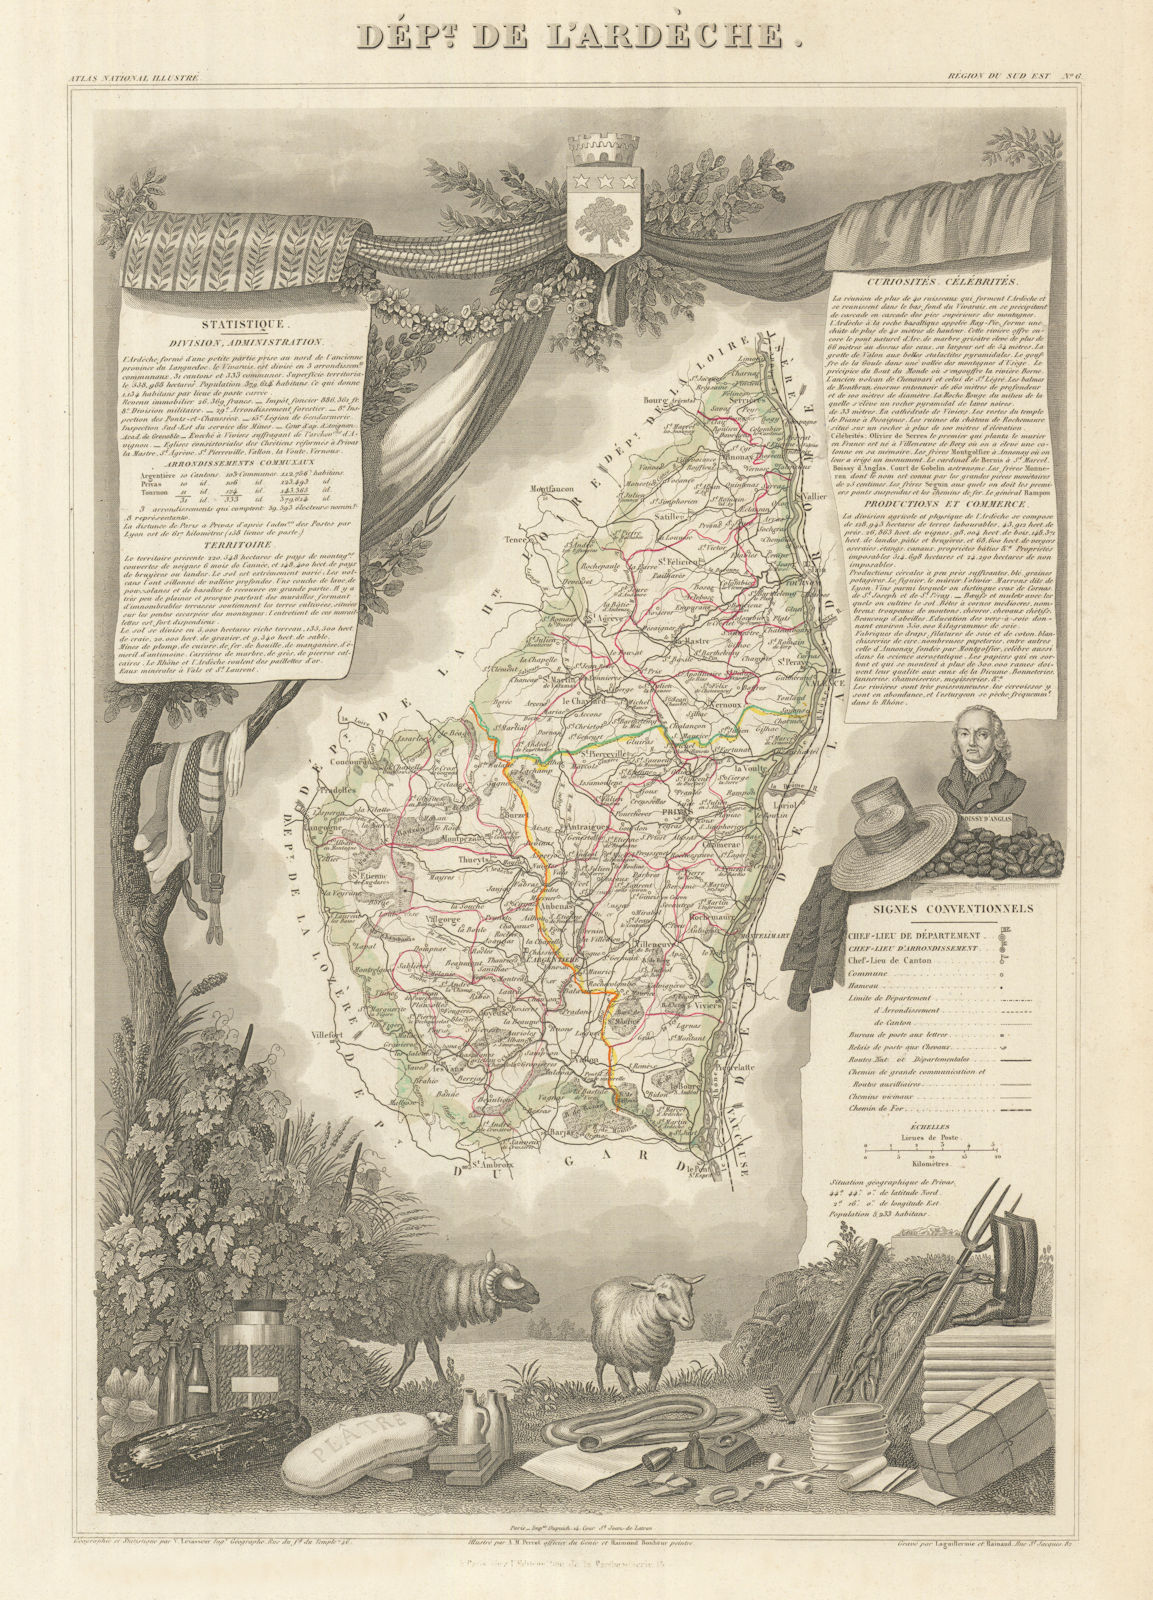 Associate Product Département de l'ARDÈCHE. Decorative antique map/carte by Victor LEVASSEUR 1856